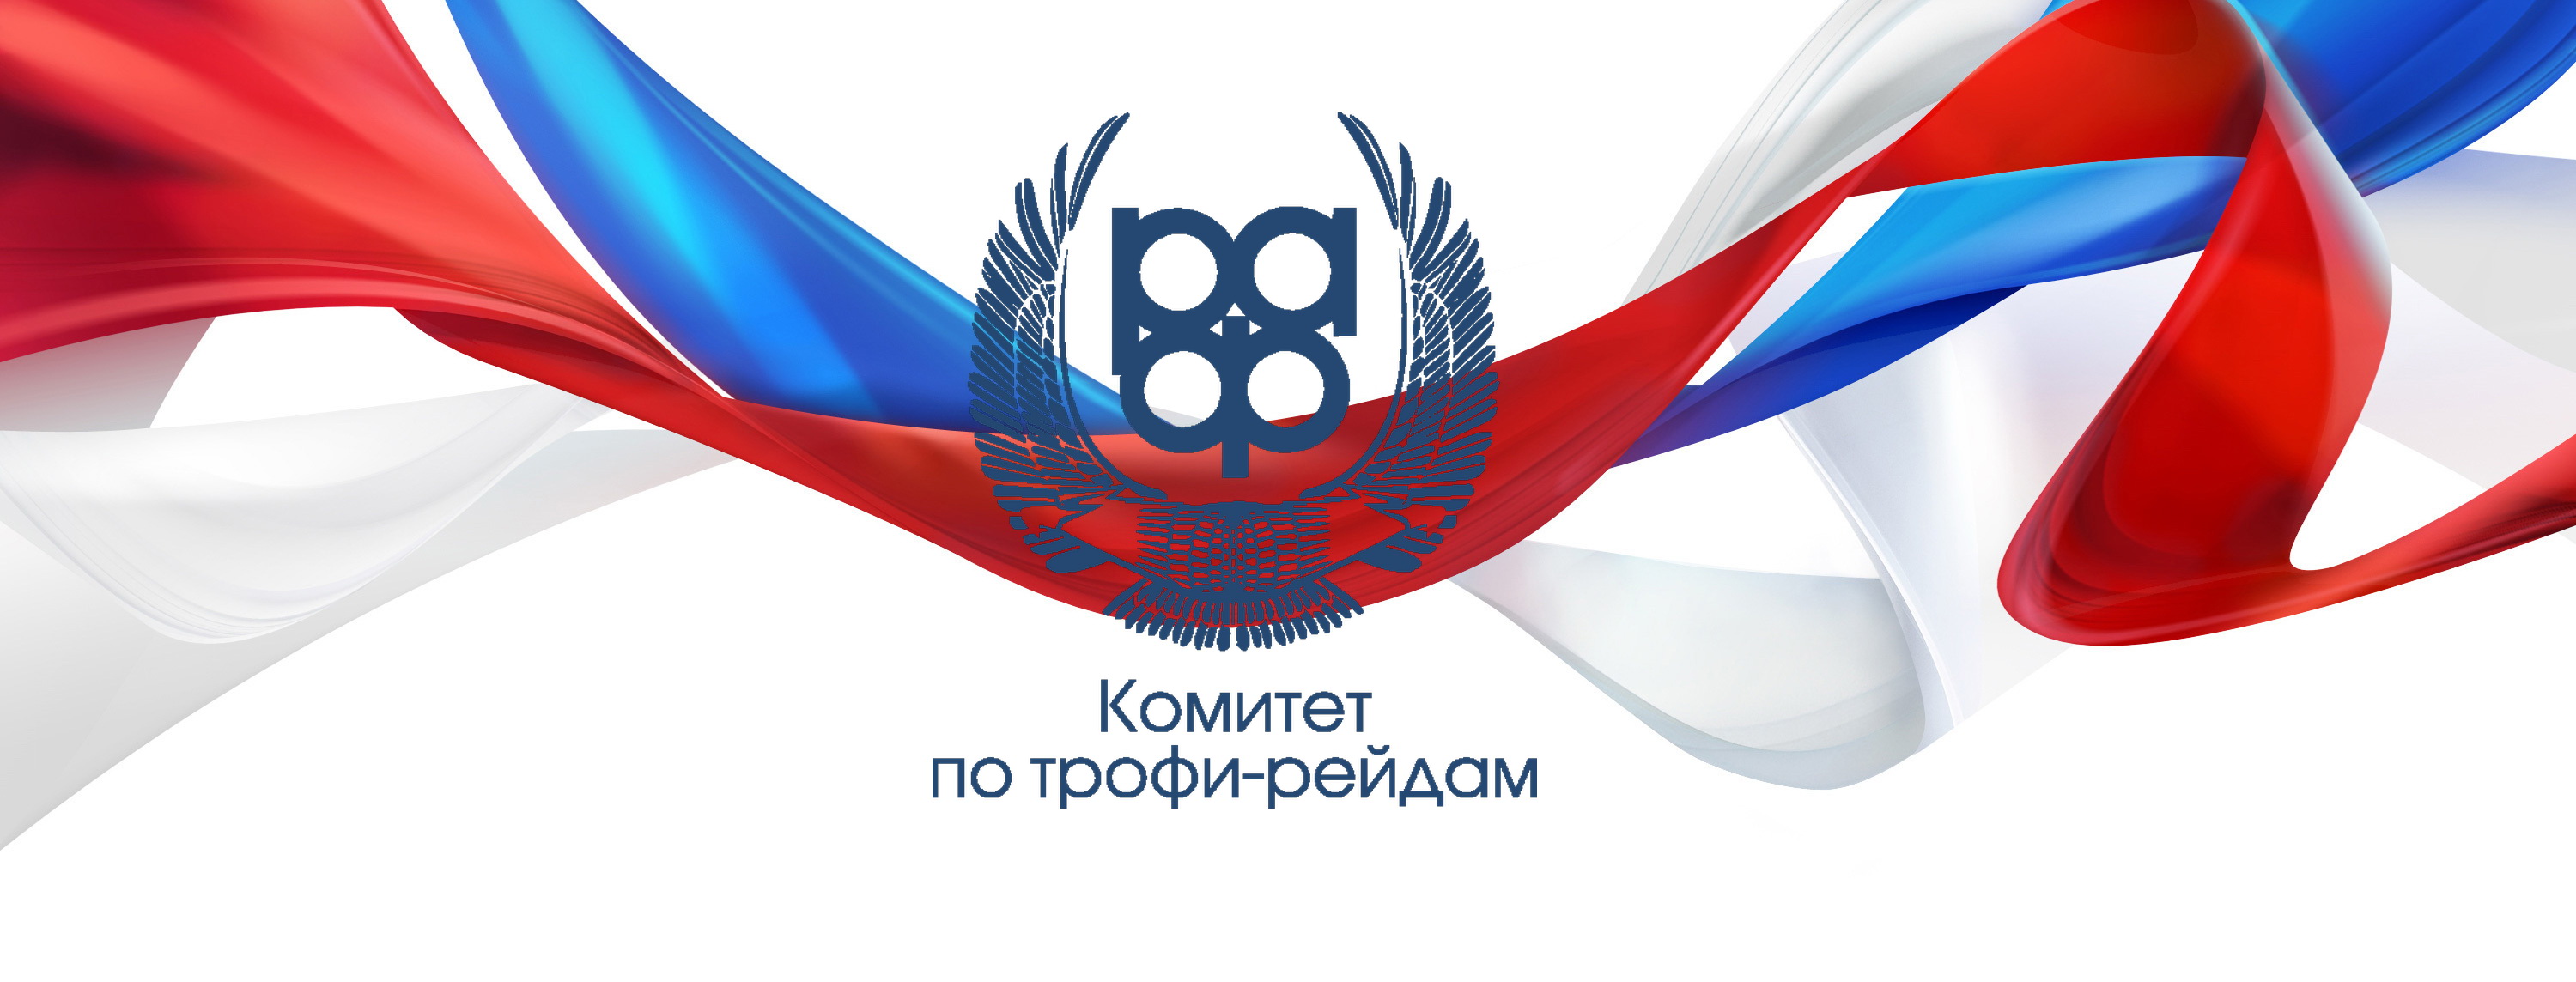 Регламент второго этапа Чемпионата России по трофи-рейдам 2019